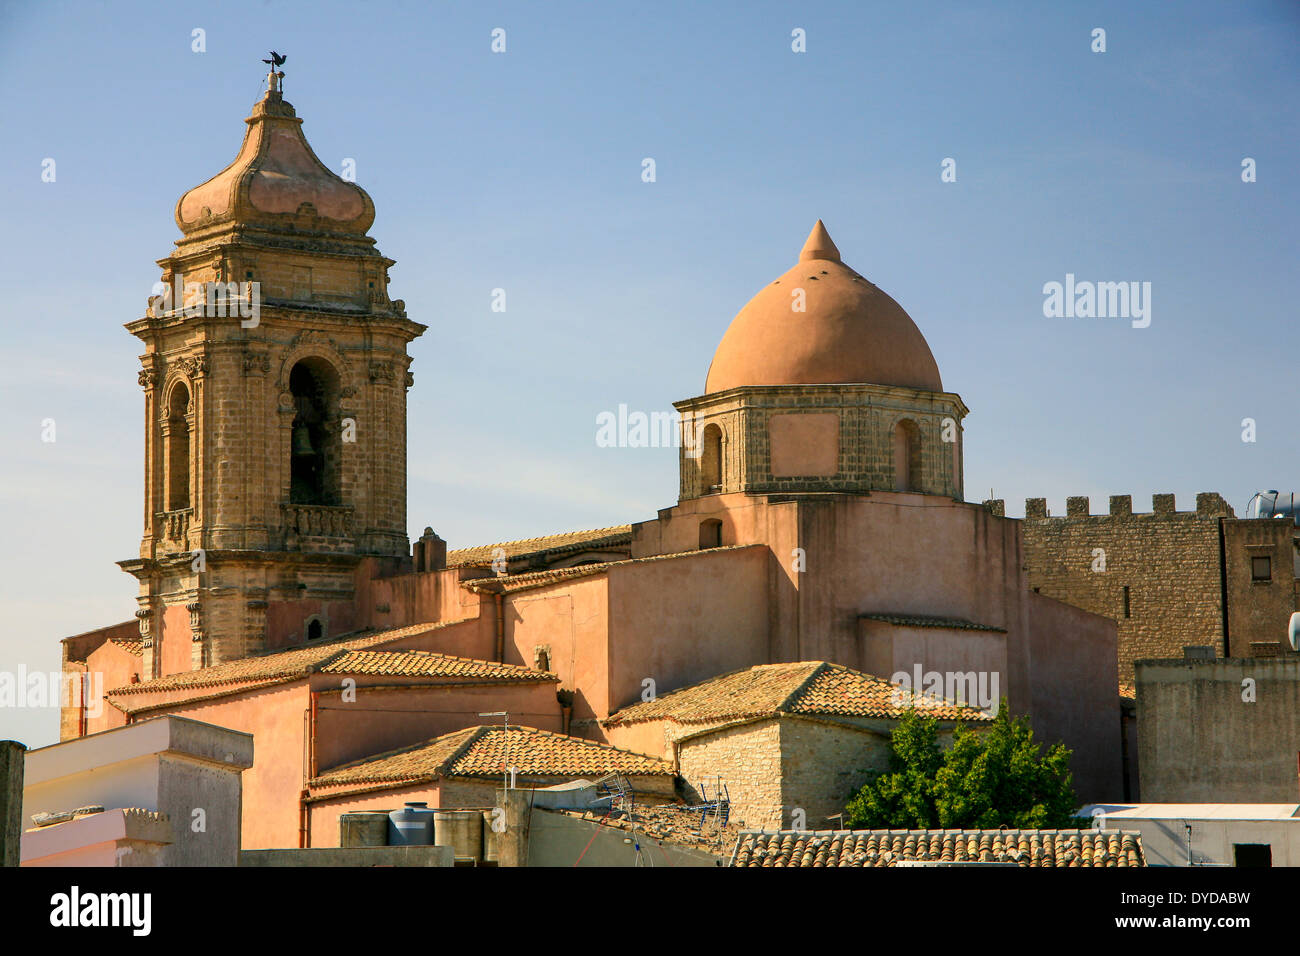 Chiesa a cupola di tetti di Erice, in Sicilia, Italia. Chiese normanne con l Islam influenza. Foto Stock